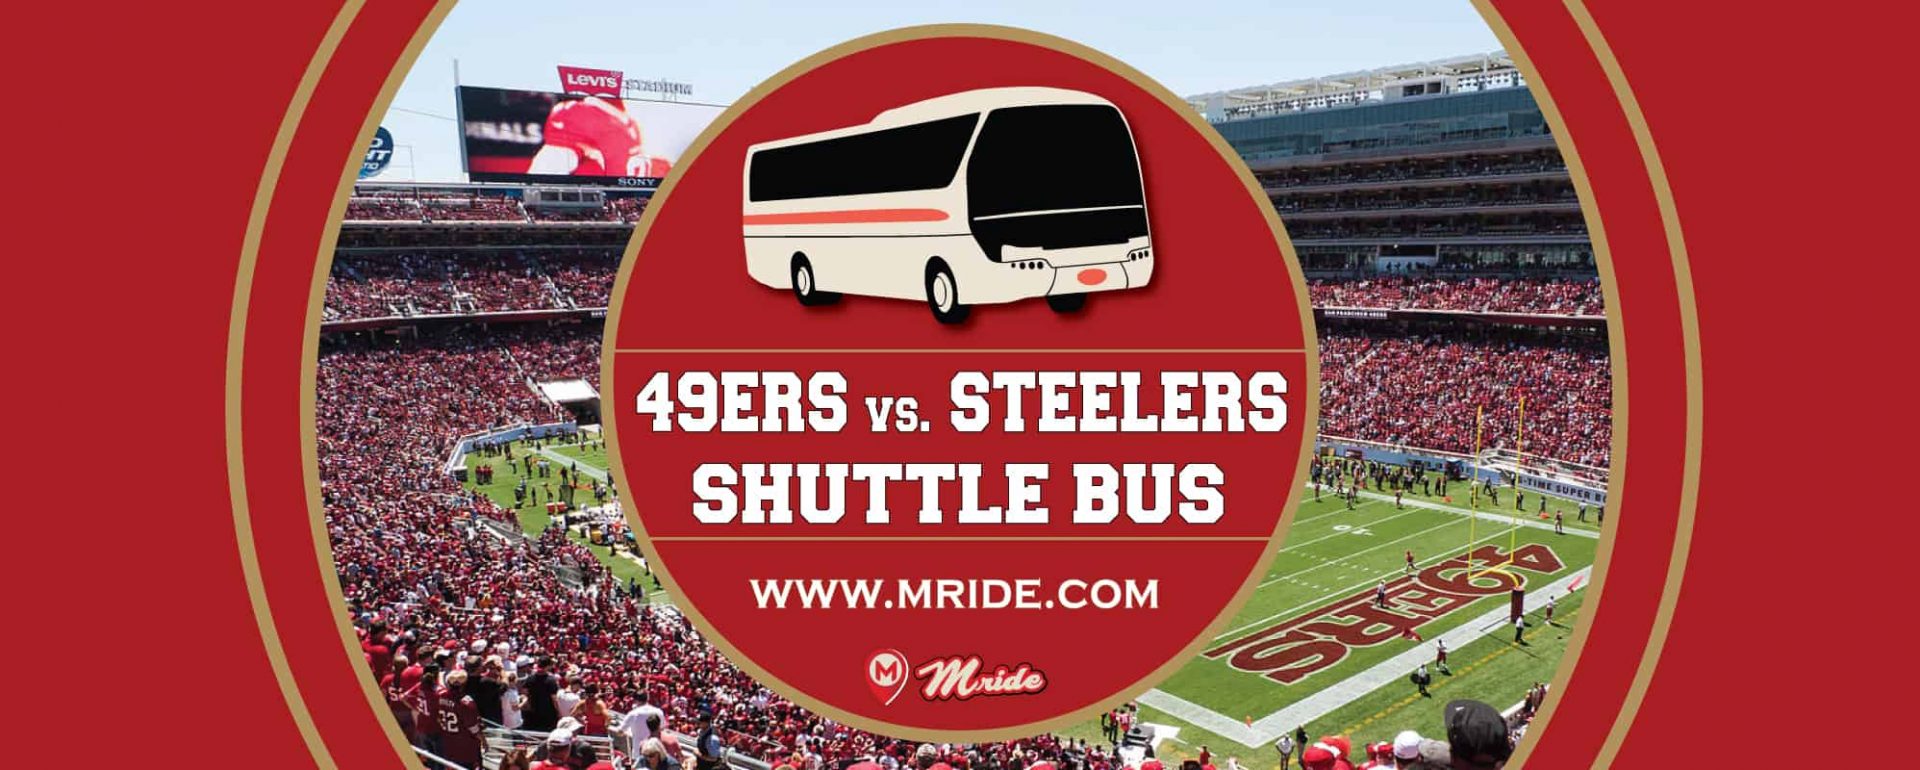 49ers vs. Steelers Shuttle Bus